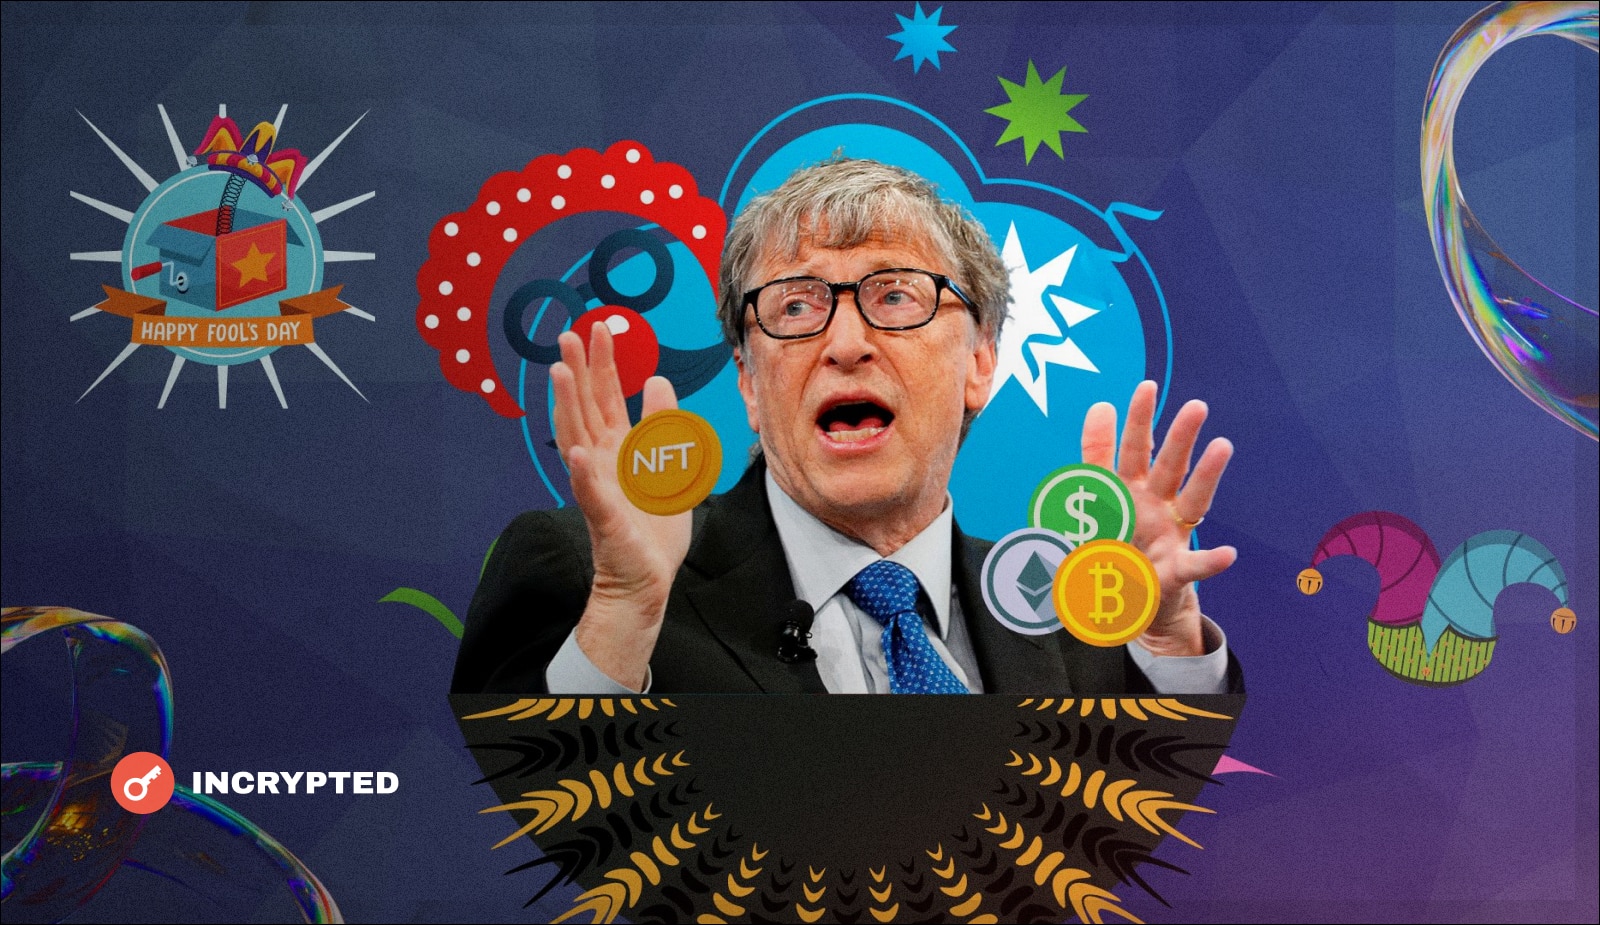 Билл Гейтс: “Криптовалюты и NFT основаны на принципах Теории большего дурака”. Заглавный коллаж новости.